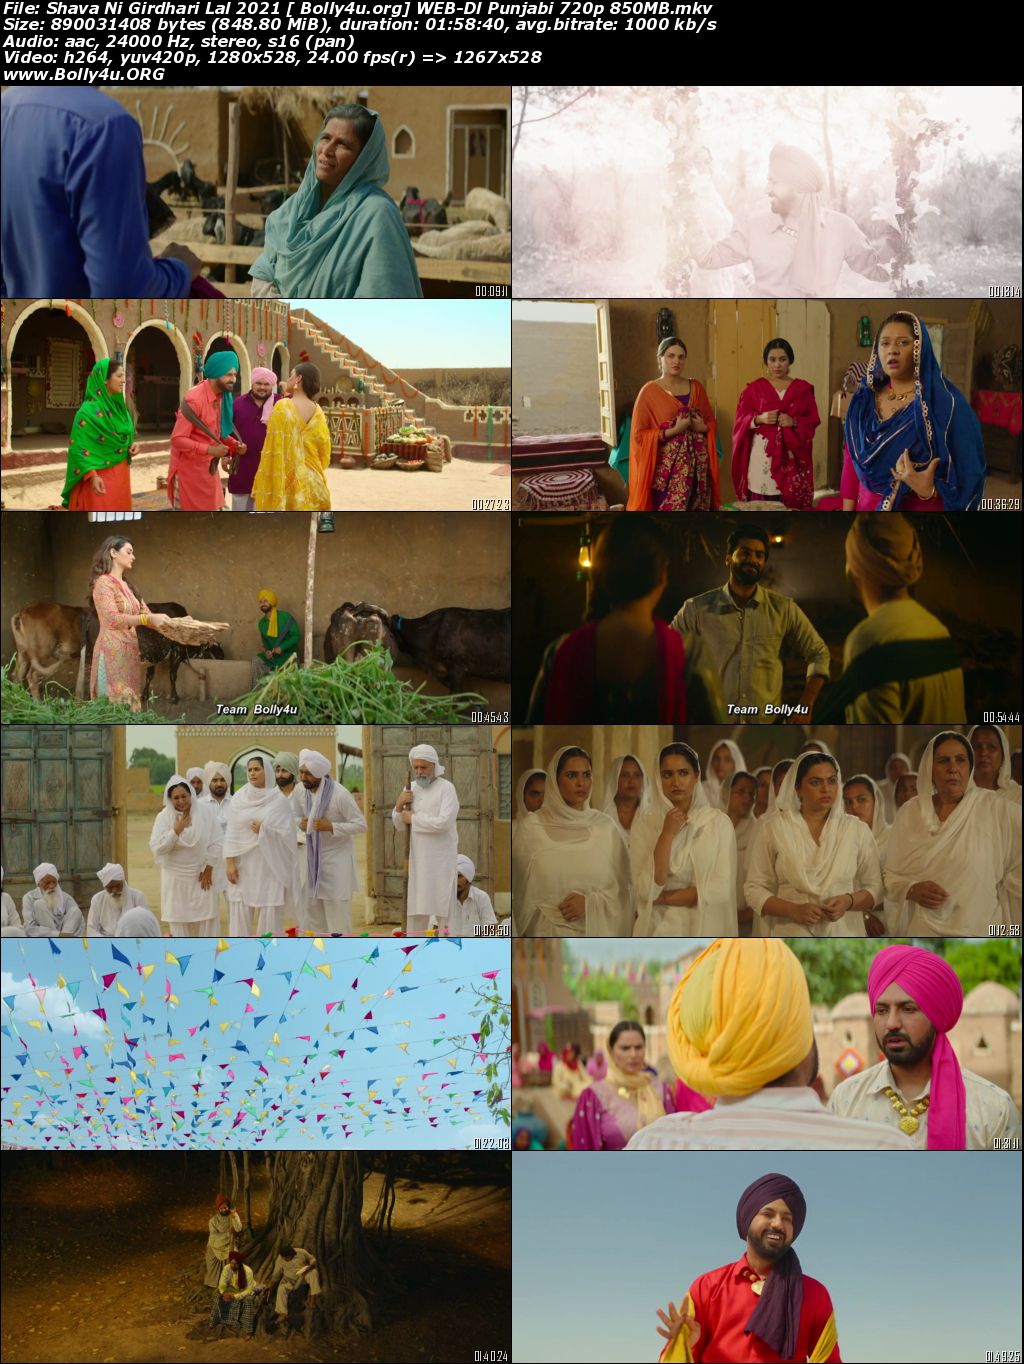 Shava Ni Girdhari Lal 2021 WEB-DL 400Mb Punjabi Movie Download 480p